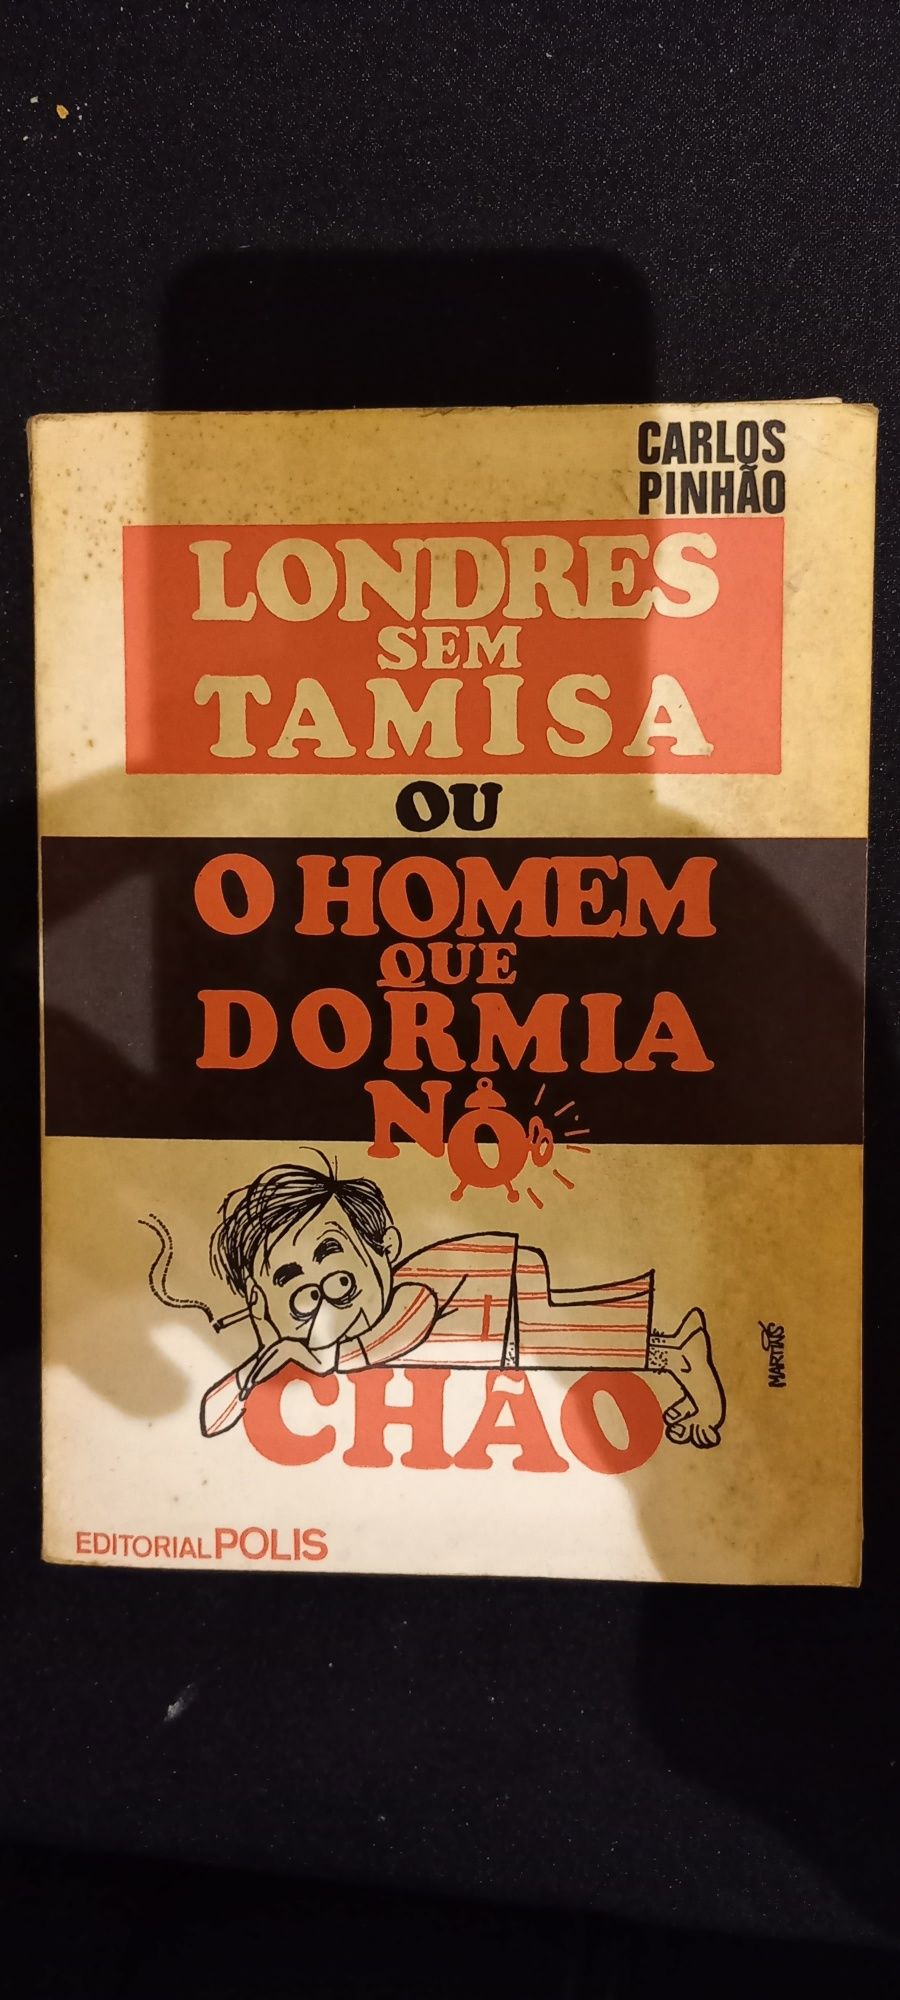 Livro do Jornalista Carlos Pinhão, 1969 PORTES GRÁTIS.